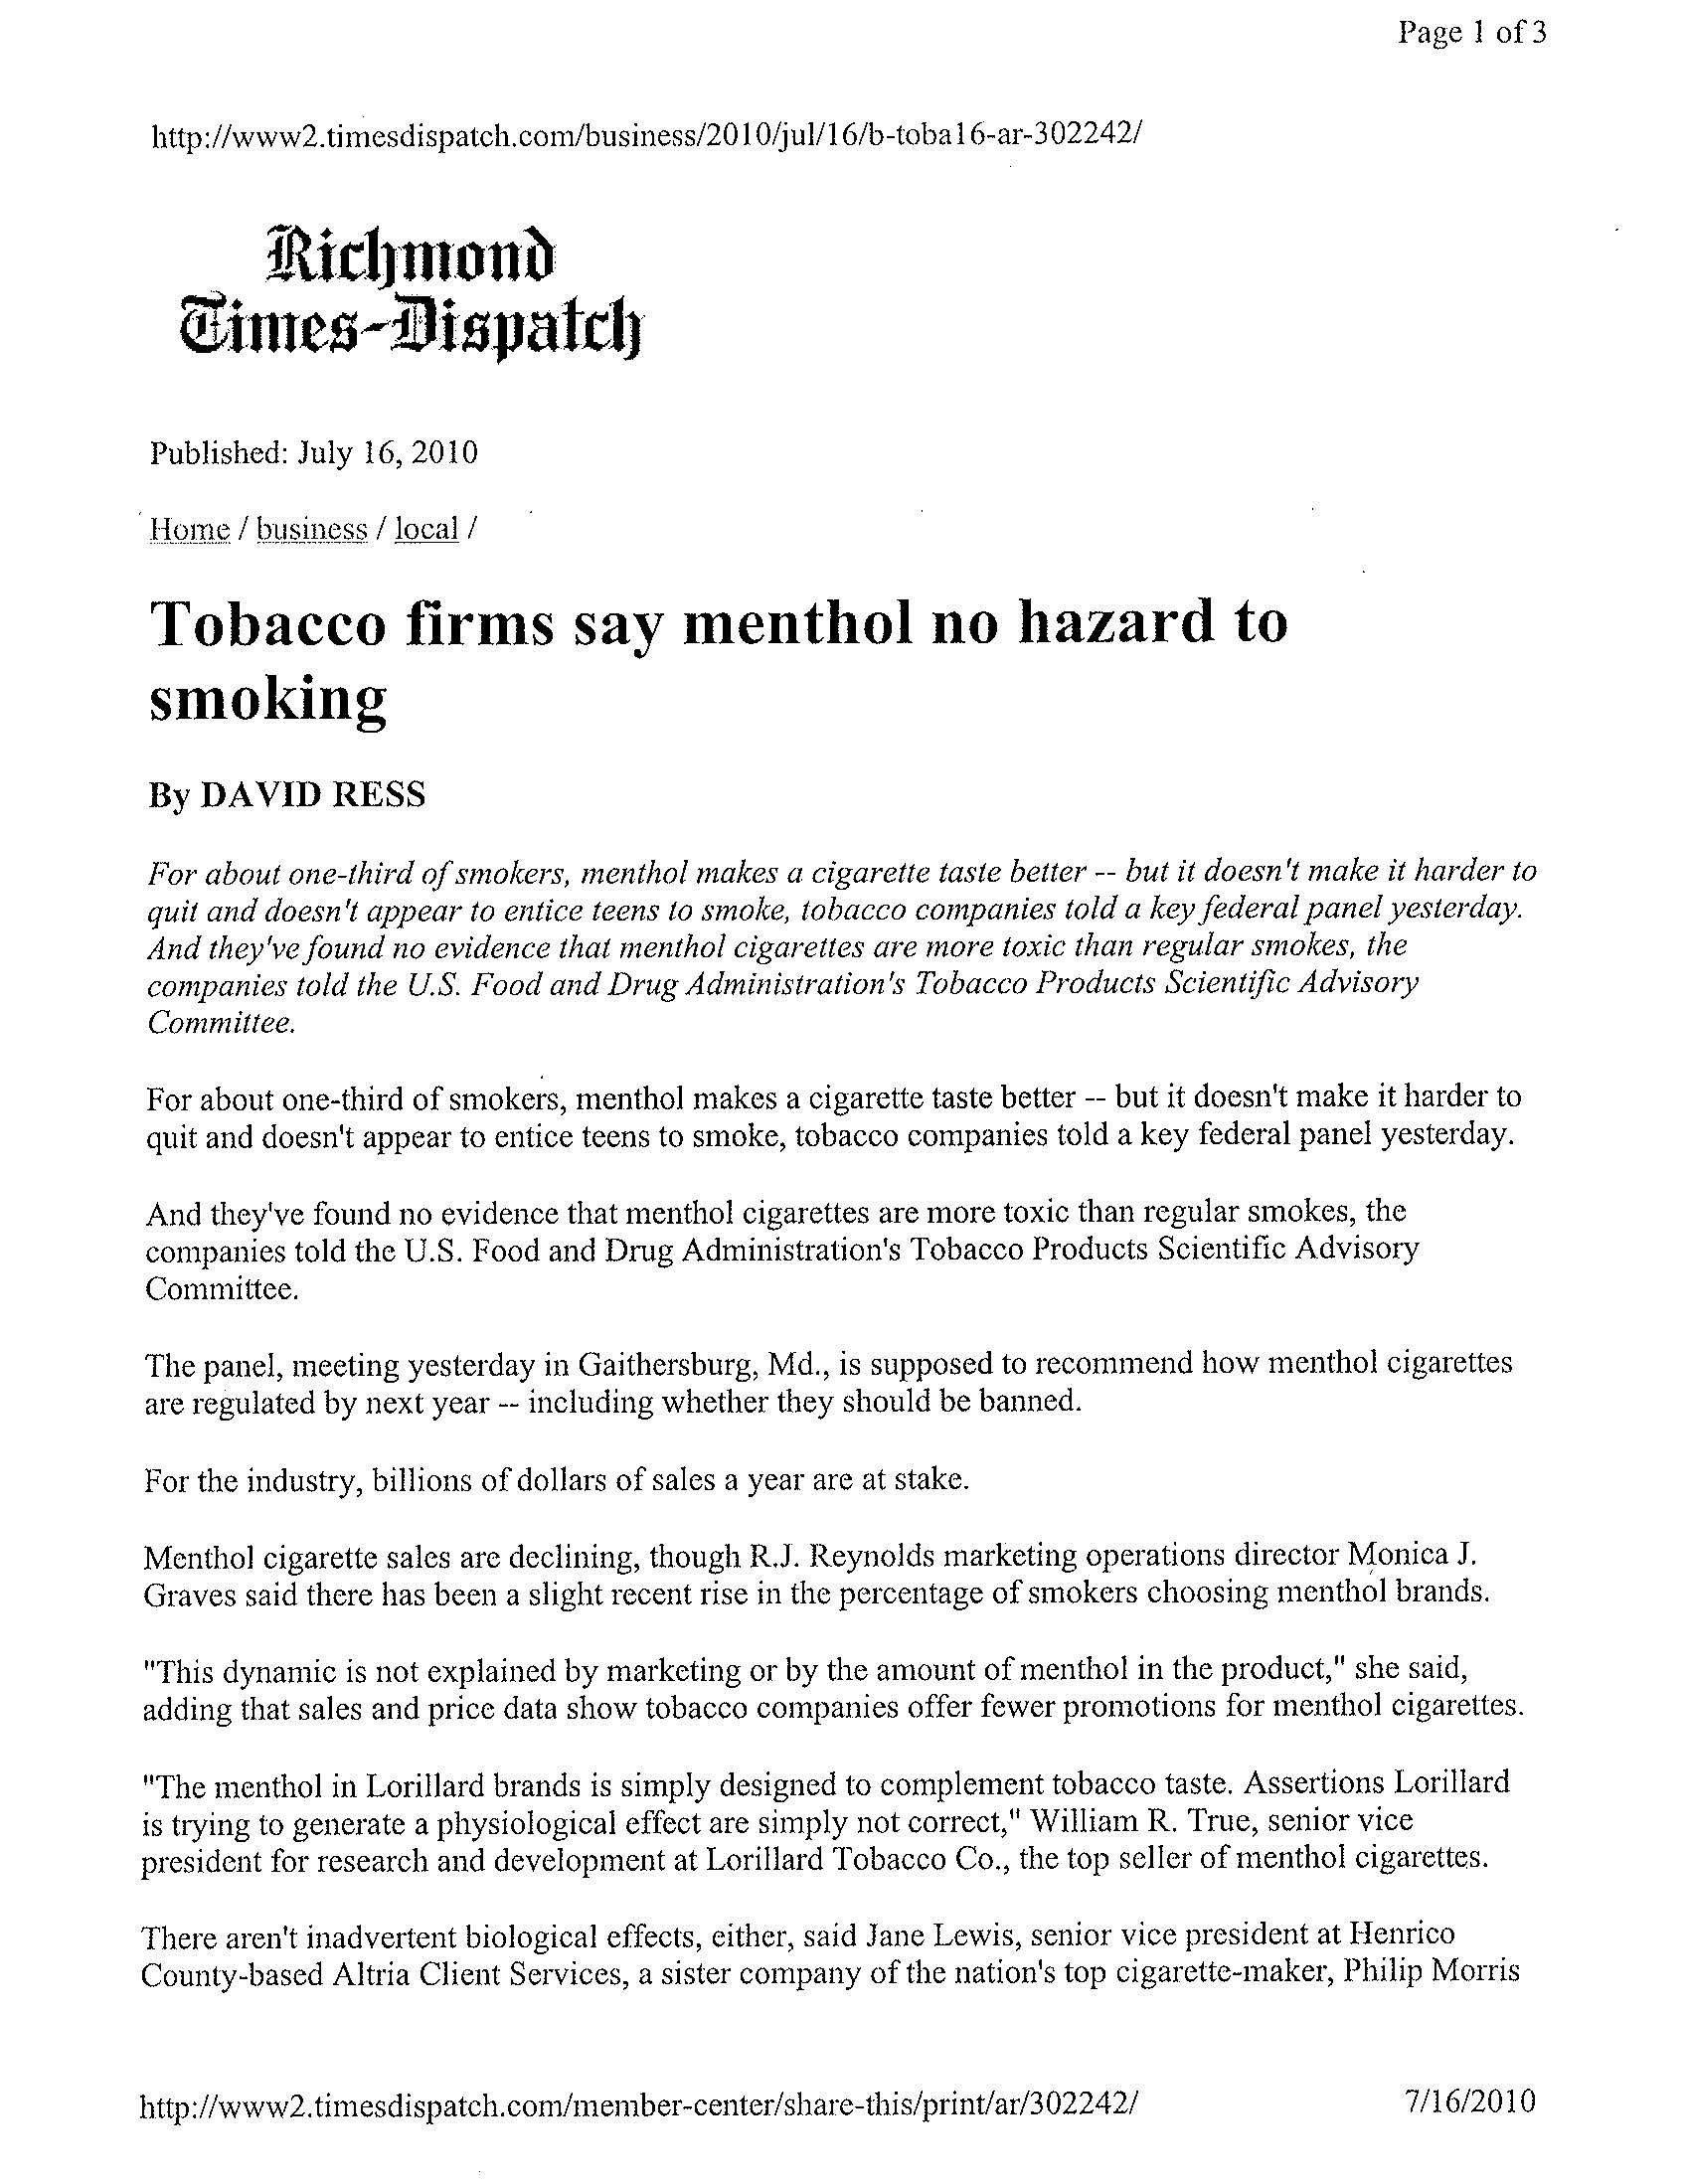 2010 Richmond Times Dispatch Tobacco Firms Say Menthol No Hazard Pg 1